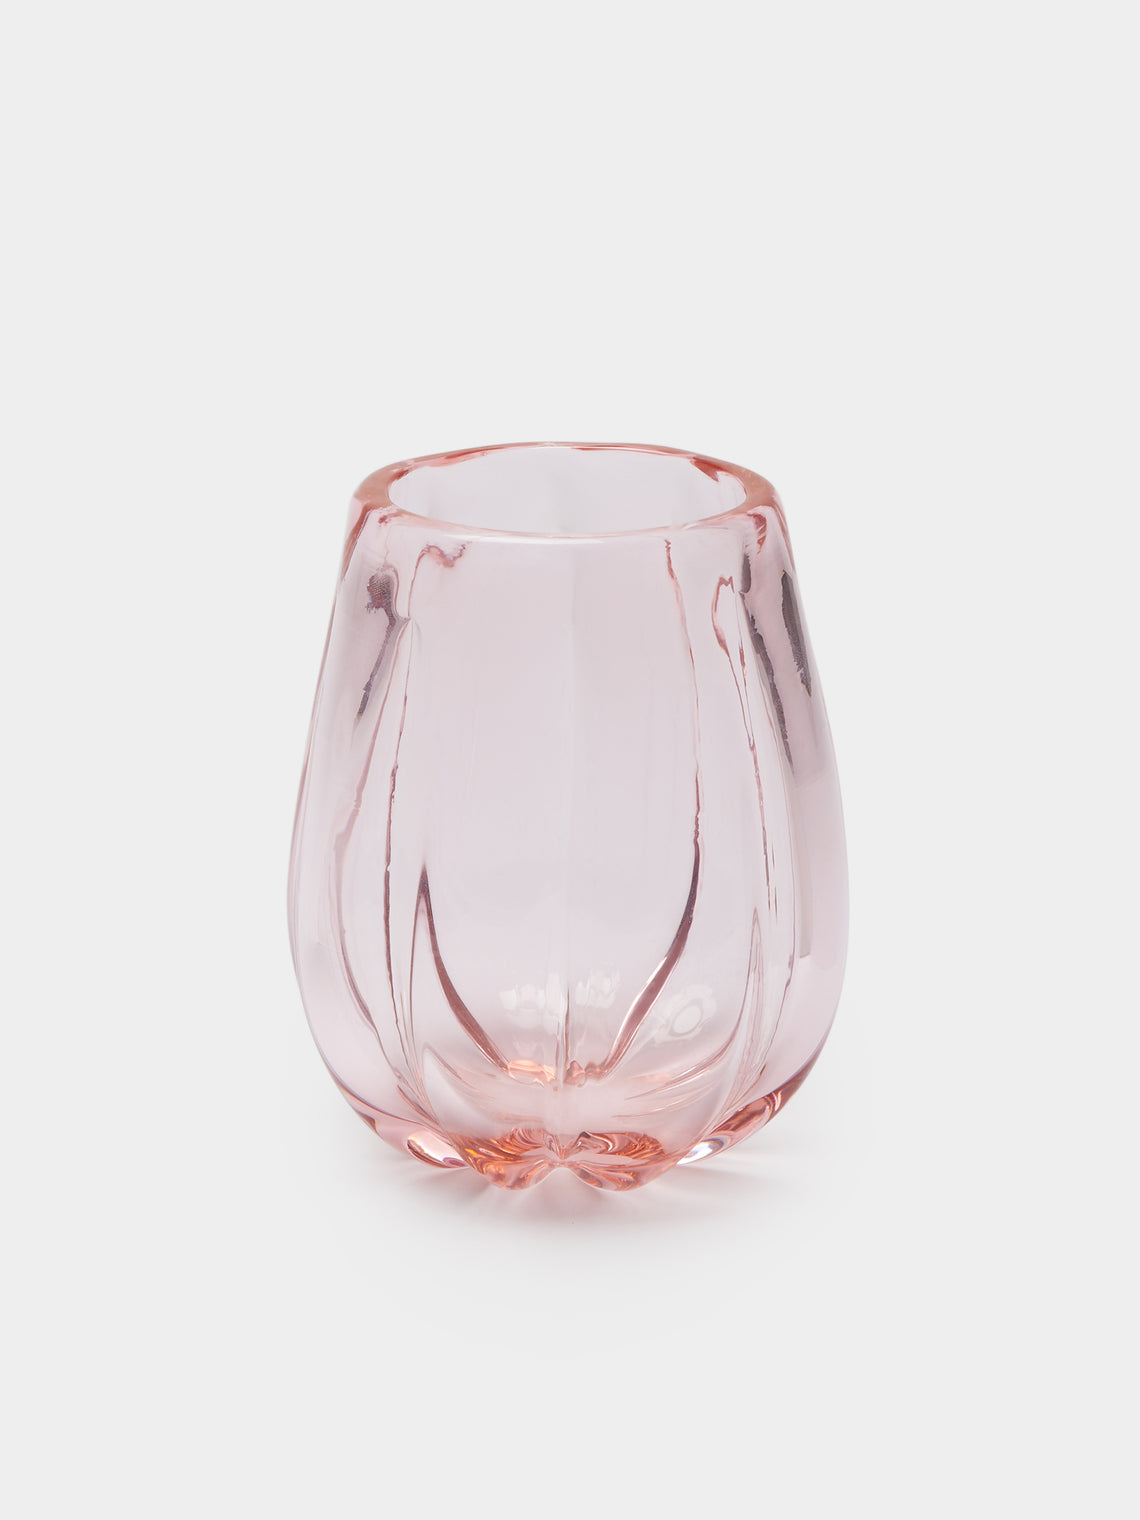 Yali Glass - Fiori Posi Hand-Blown Murano Glass Vase - Pink - ABASK - 